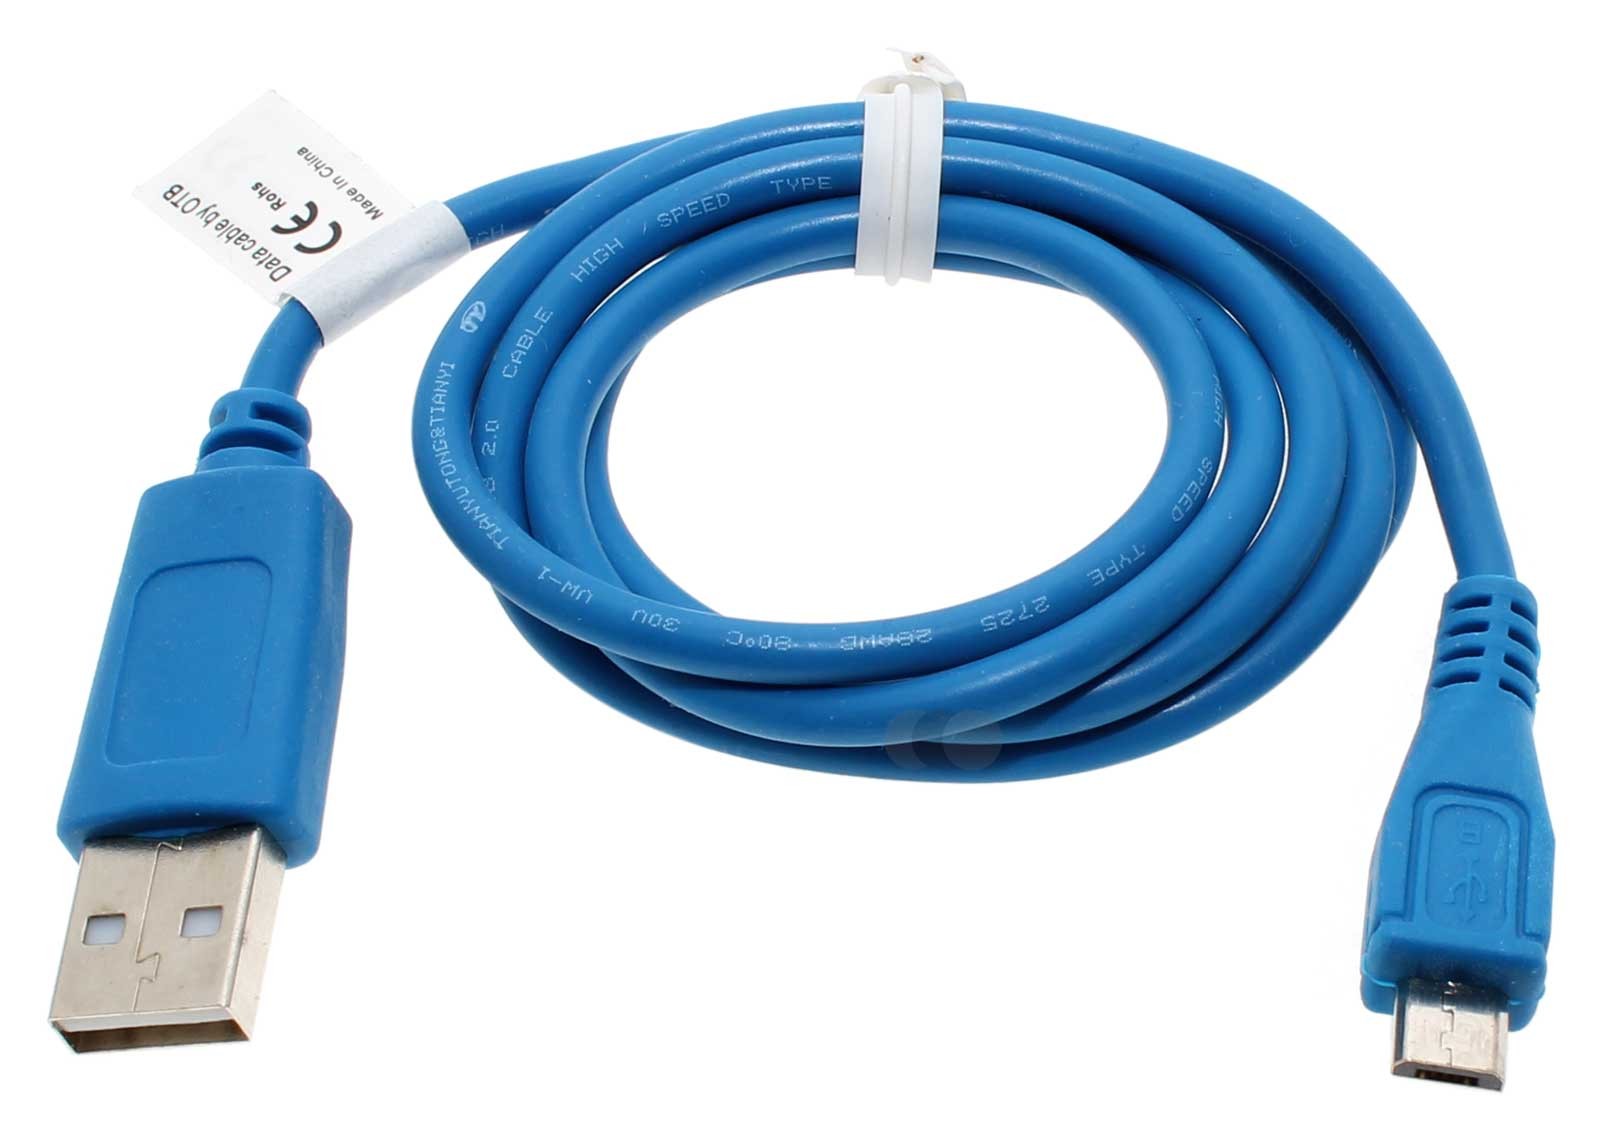 Blaues, 0,95m langes USB-Datenkabel und Ladekabel, USB 2.0 Typ A auf Micro-USB, für Smartphone, Handy, Tablet u.a.